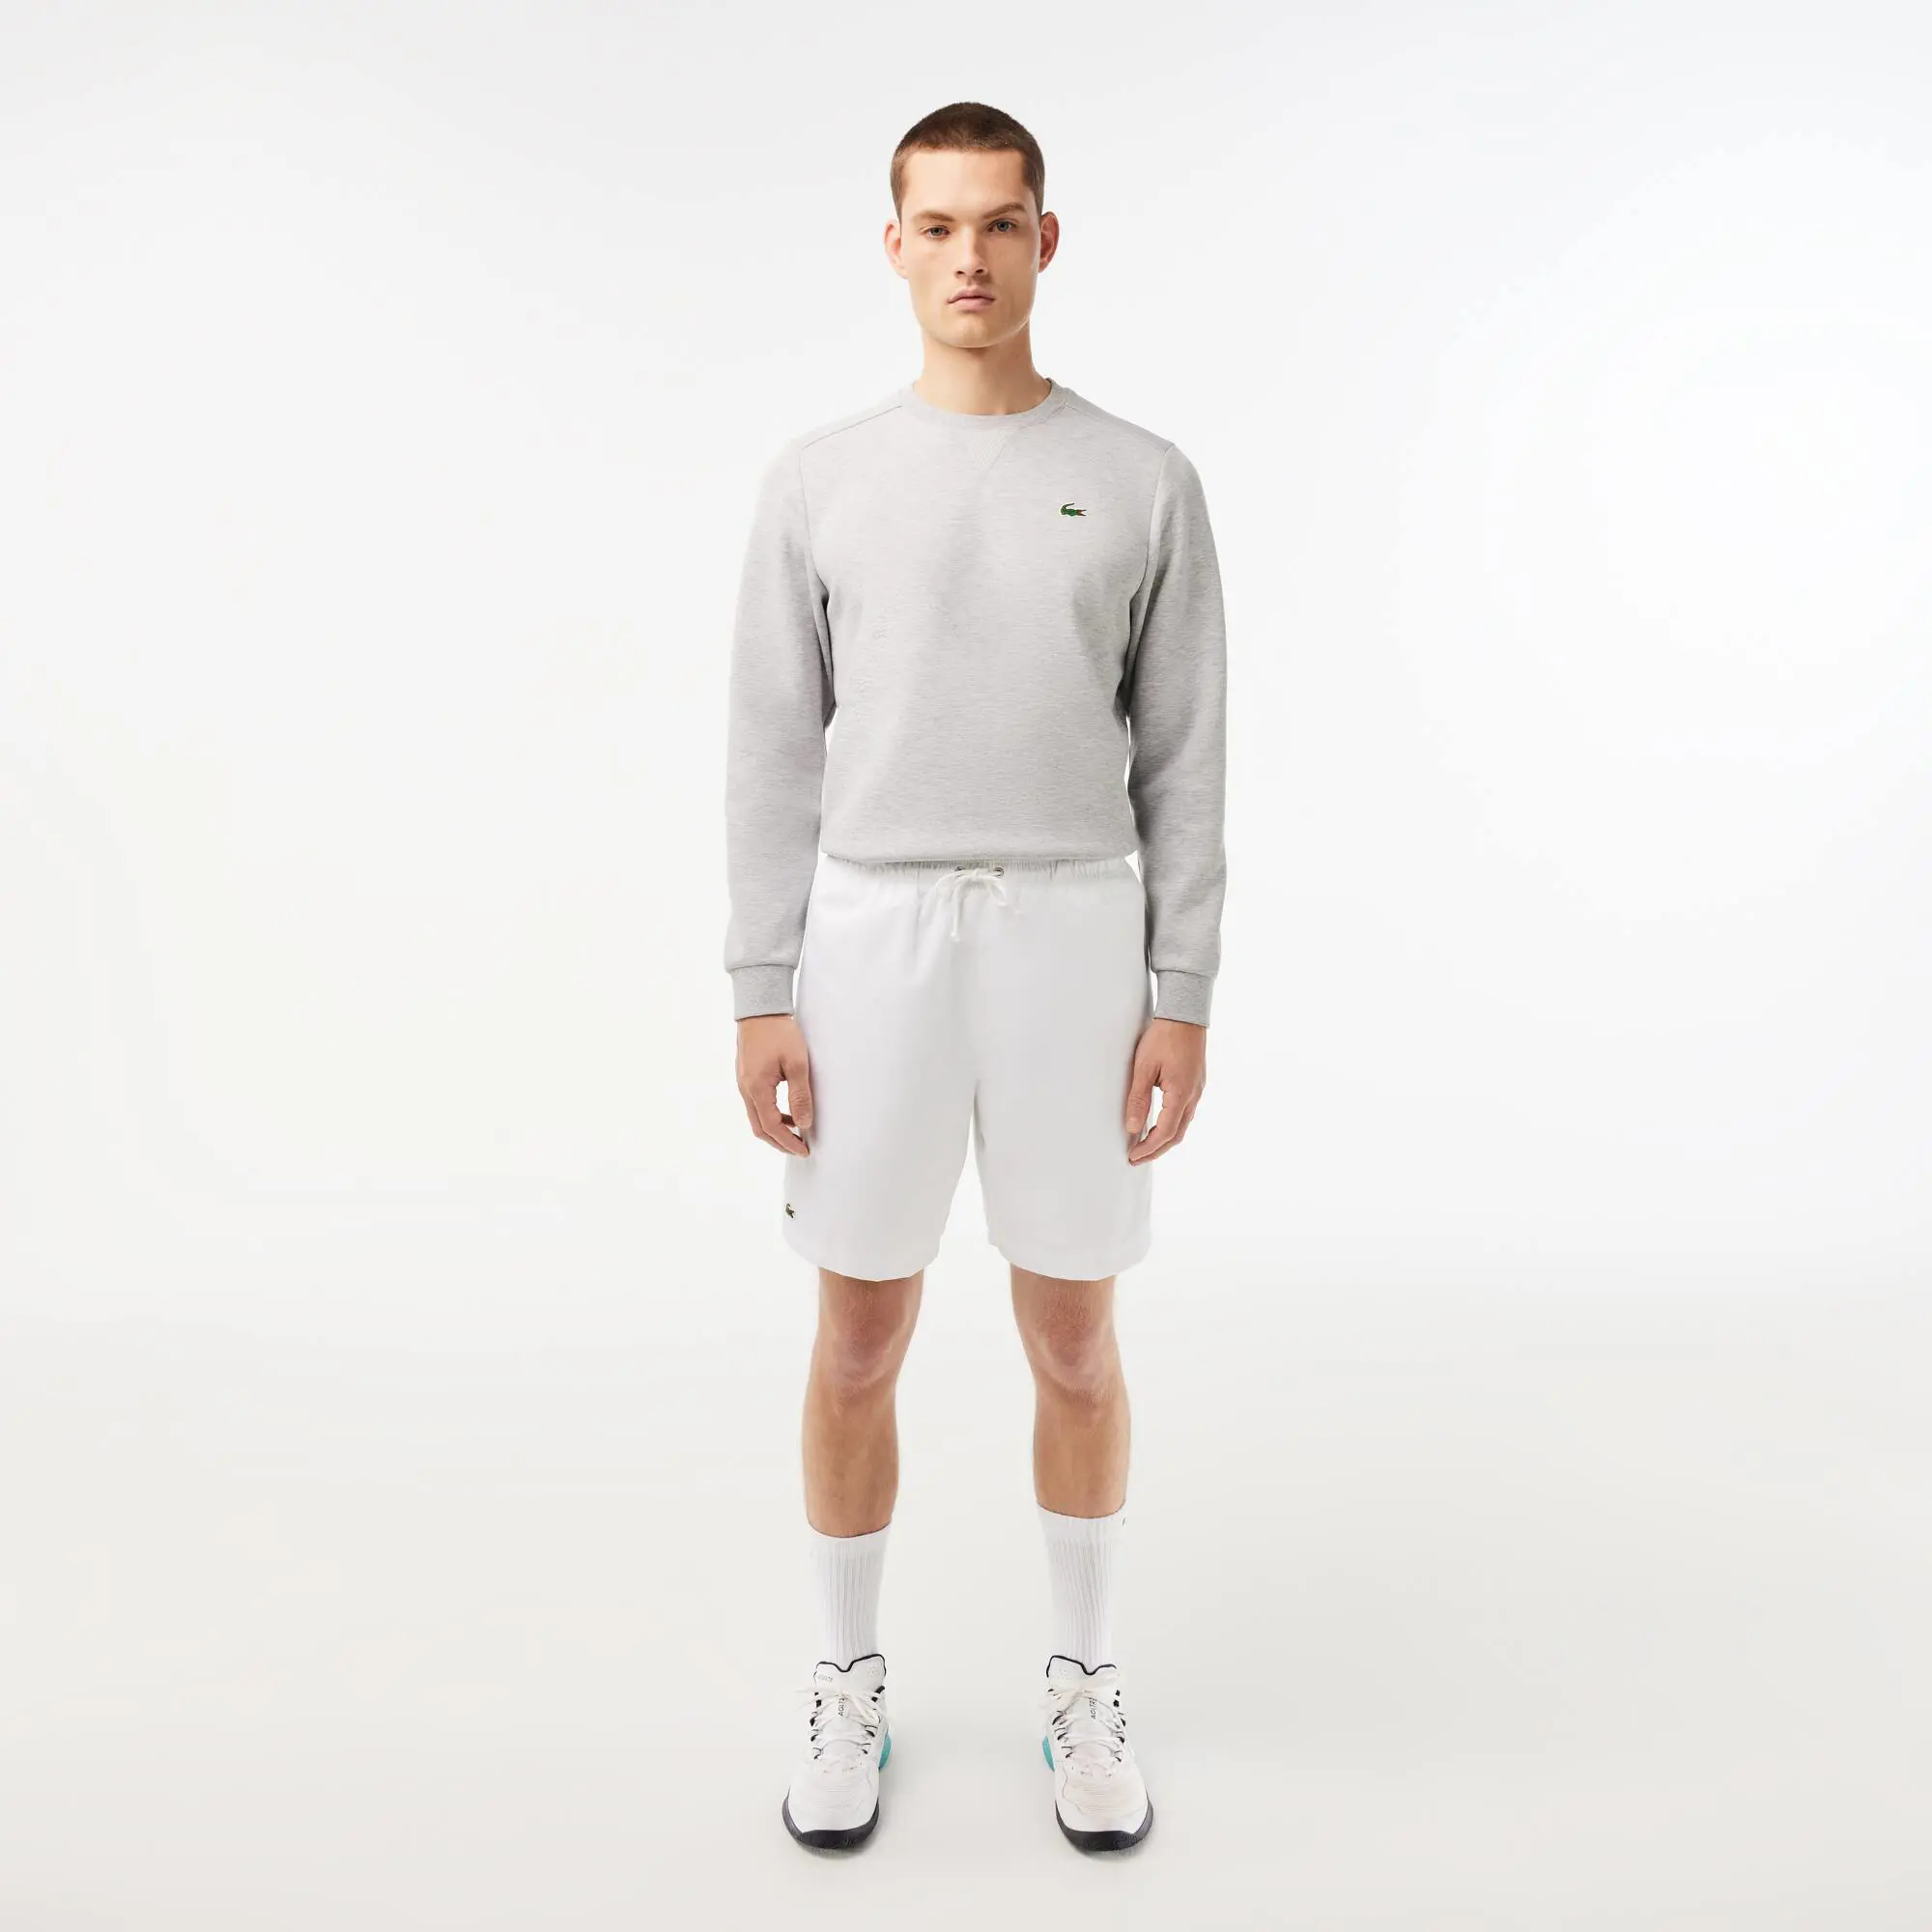 Lacoste Men's Lacoste SPORT tennis shorts in solid diamond weave taffeta. 1